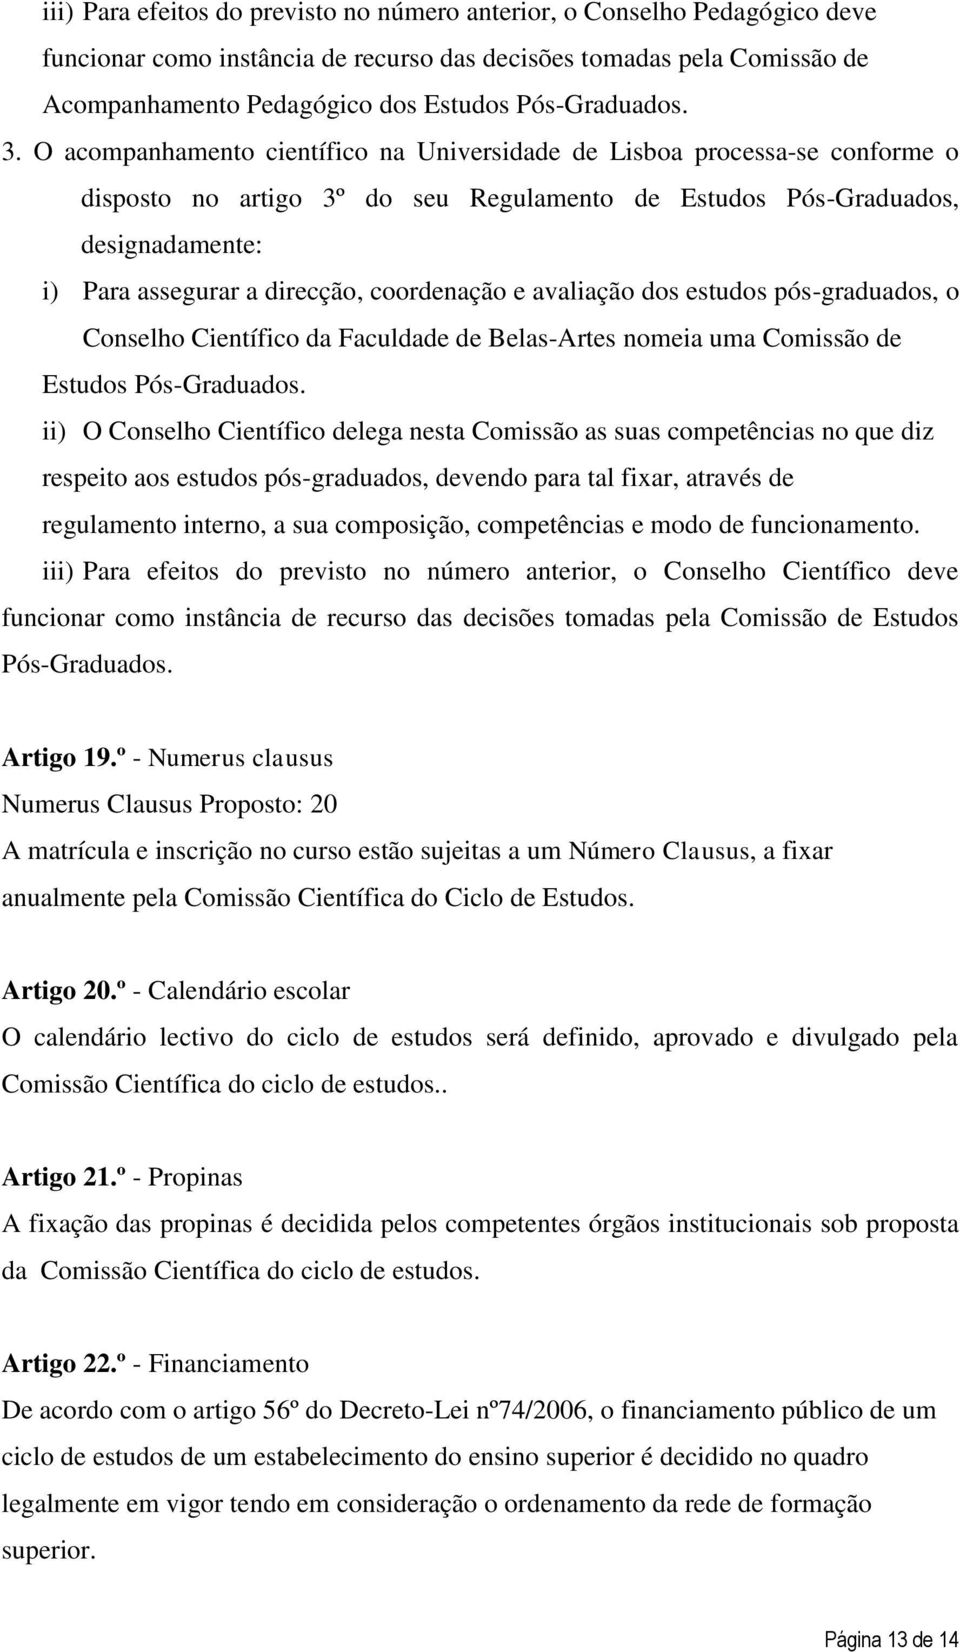 O acompanhamento científico na Universidade de Lisboa processa-se conforme o disposto no artigo 3º do seu Regulamento de Estudos Pós-Graduados, designadamente: i) Para assegurar a direcção,